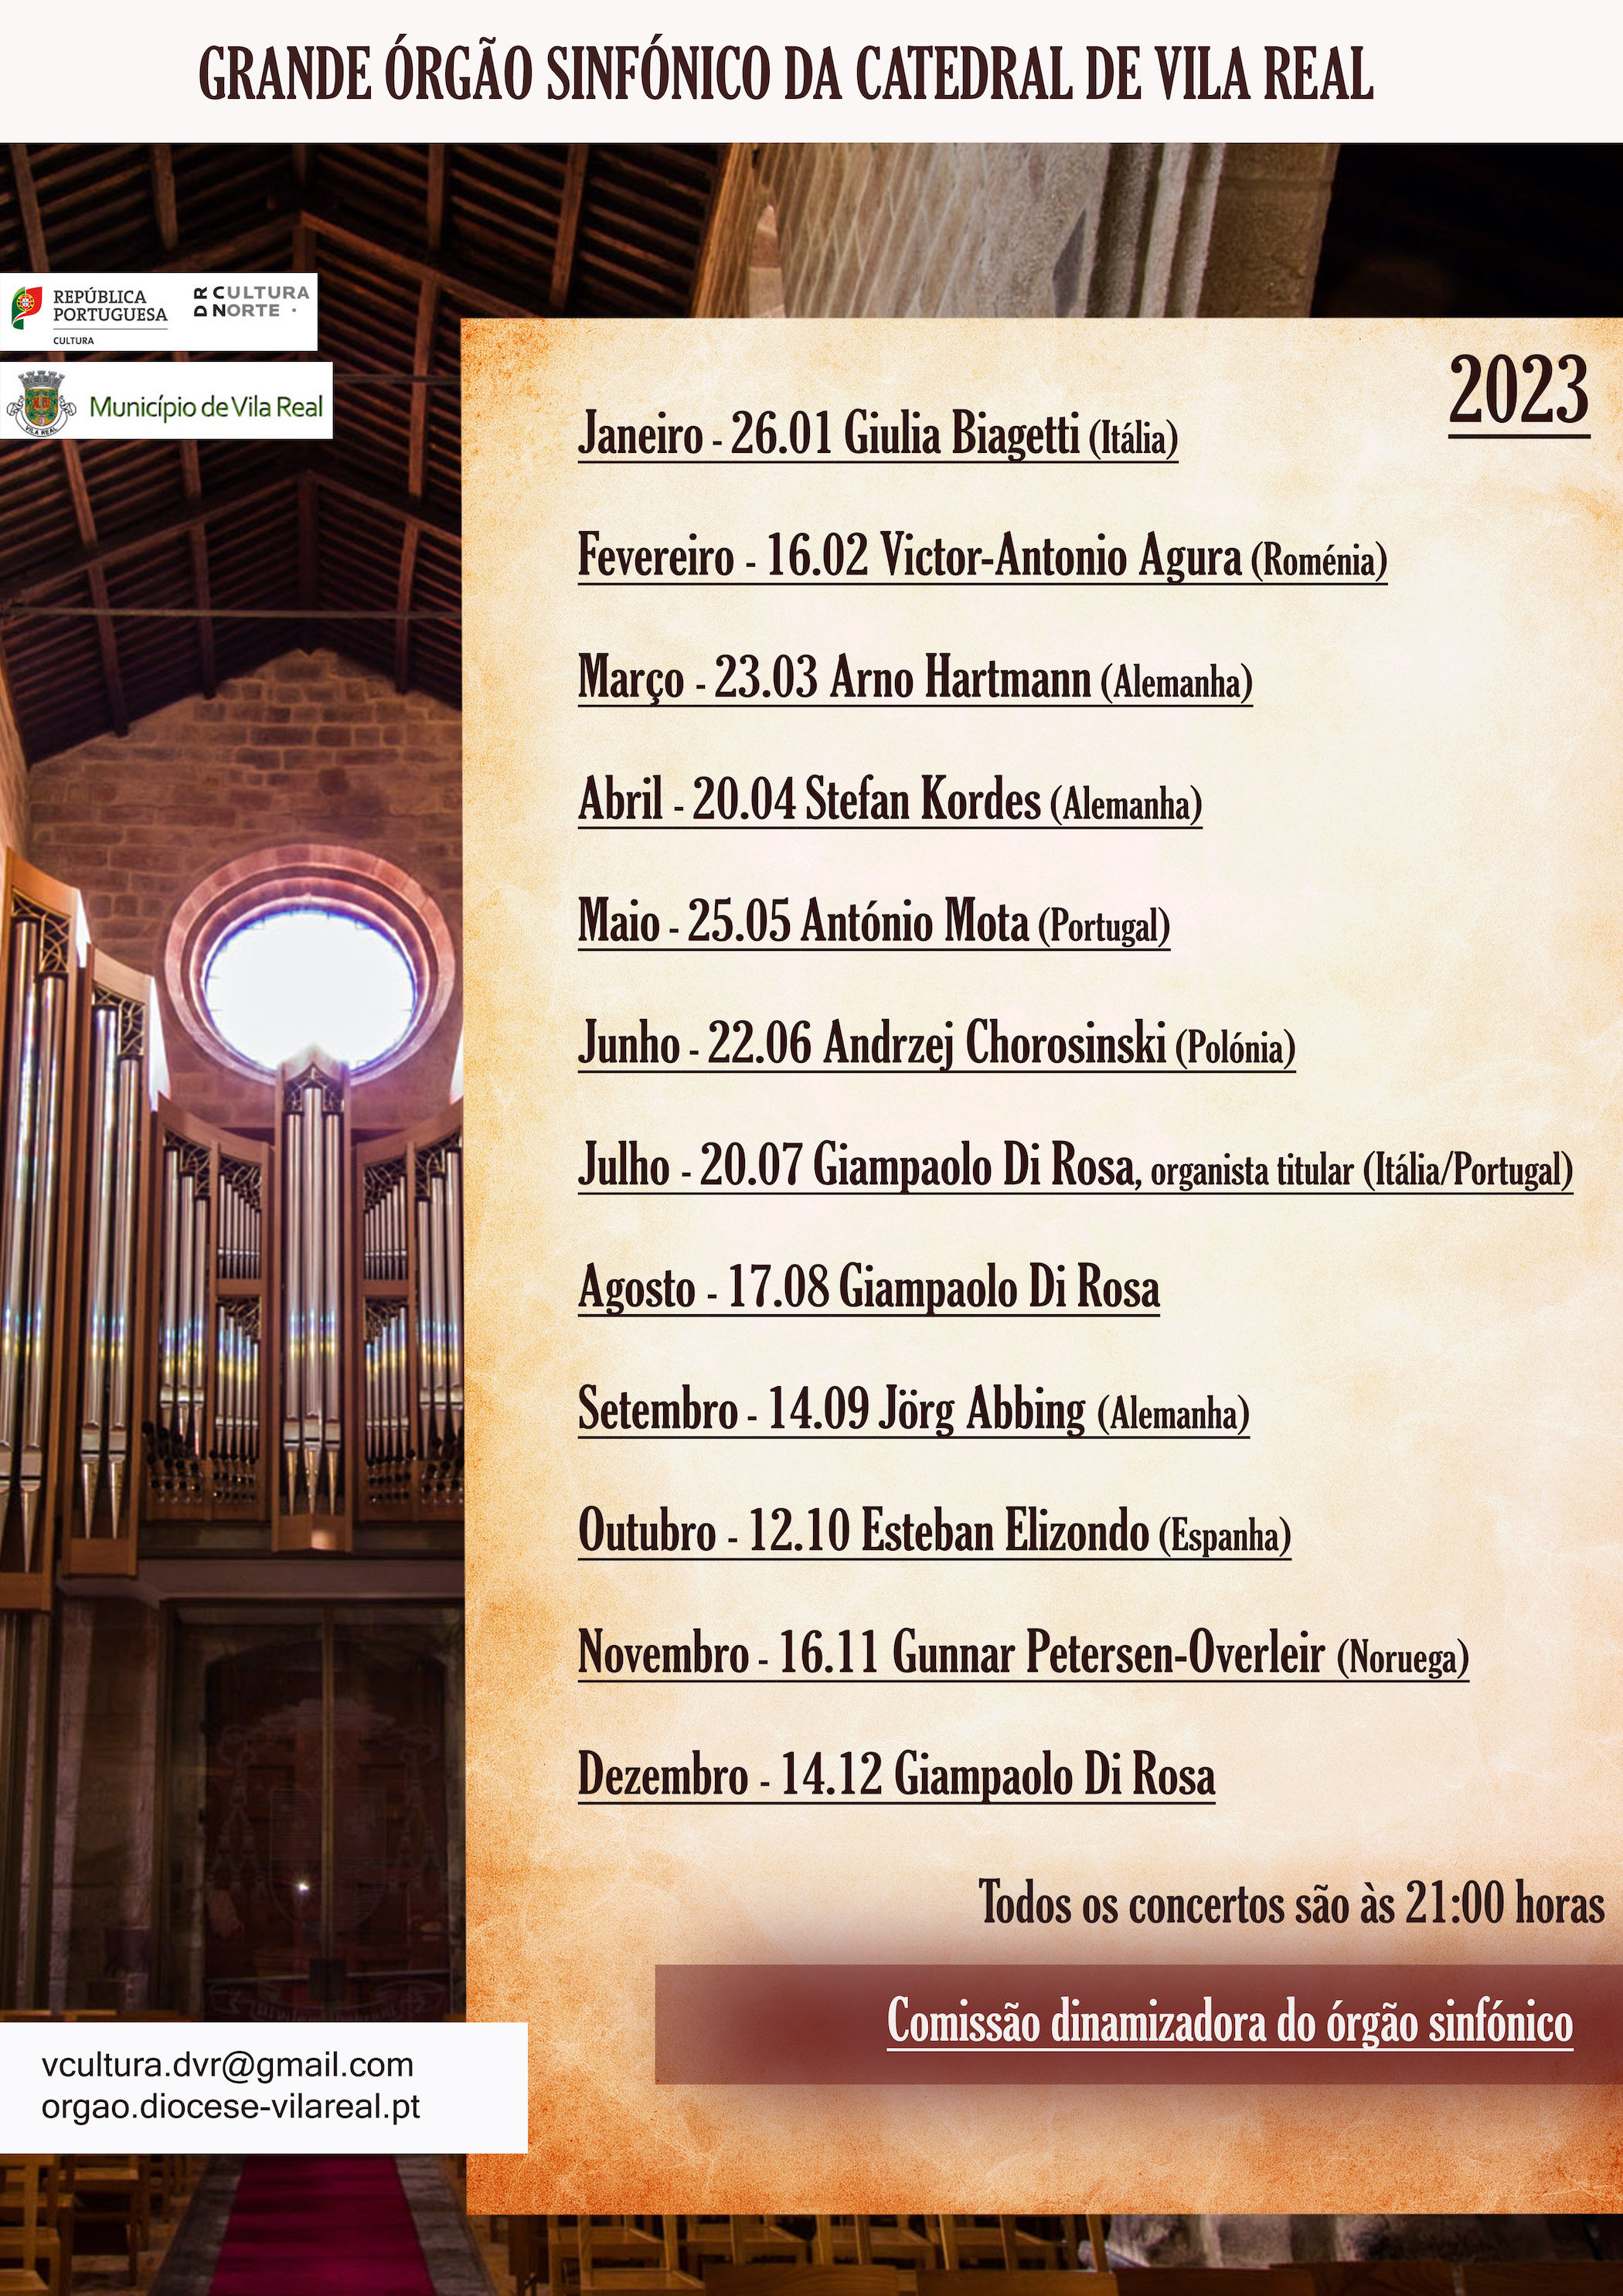 Grande órgão sinfónico da catedral de Vila Real | 2023